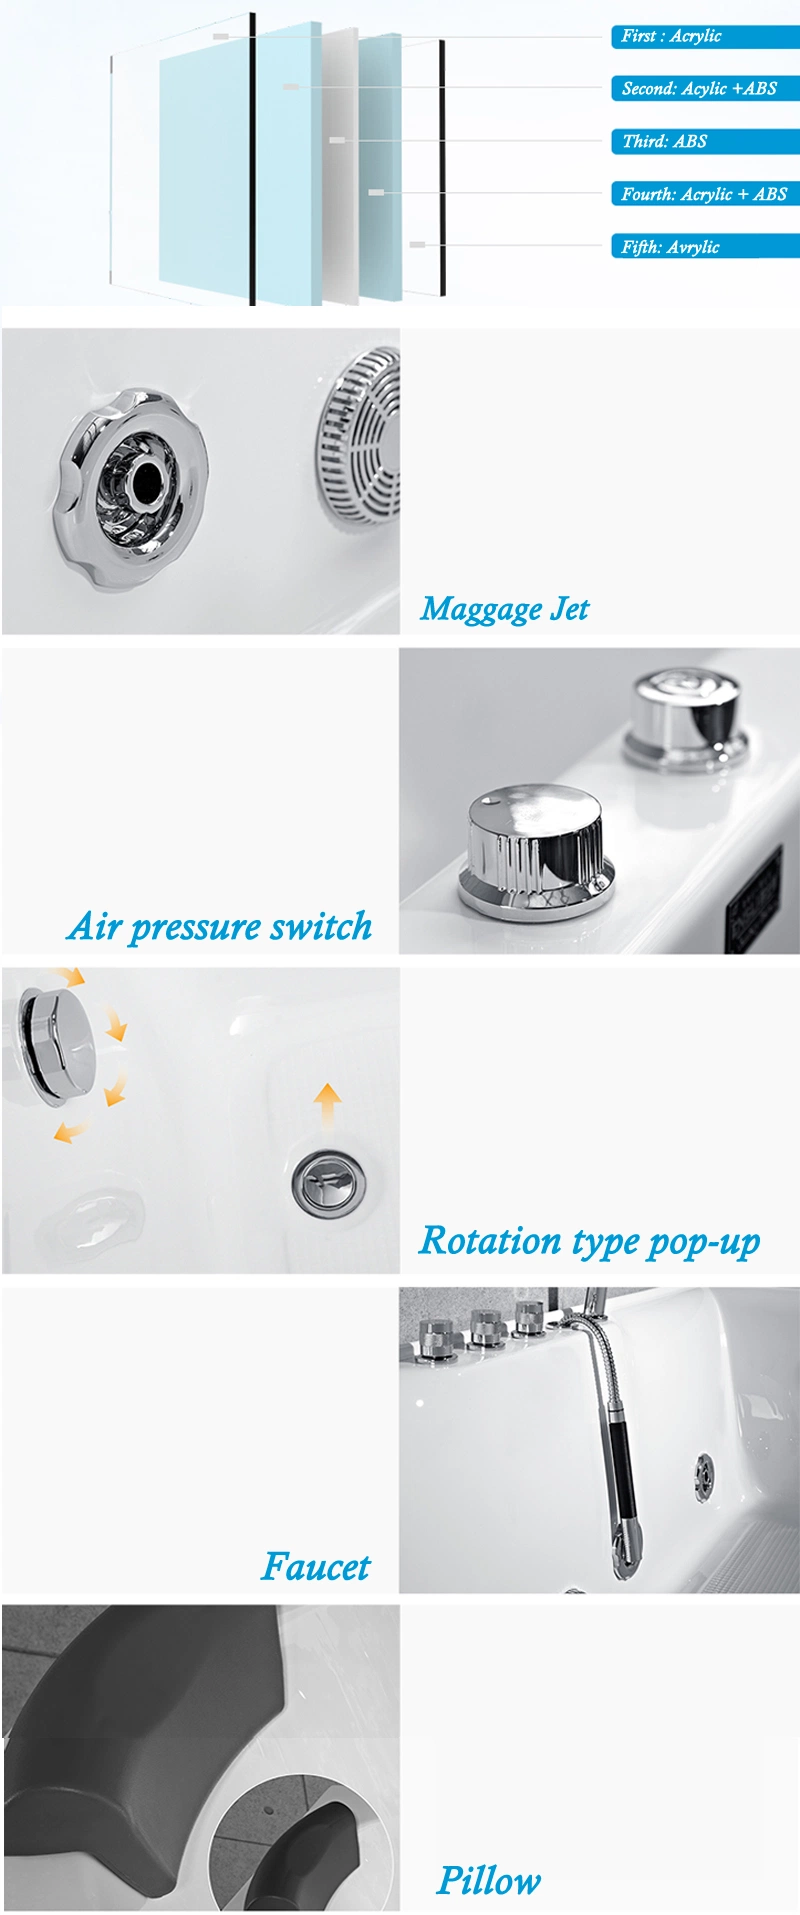 Foshan Acrylic Massage Bathtub Factory Directly Supply Sanitary Tub (Bt-A1011)